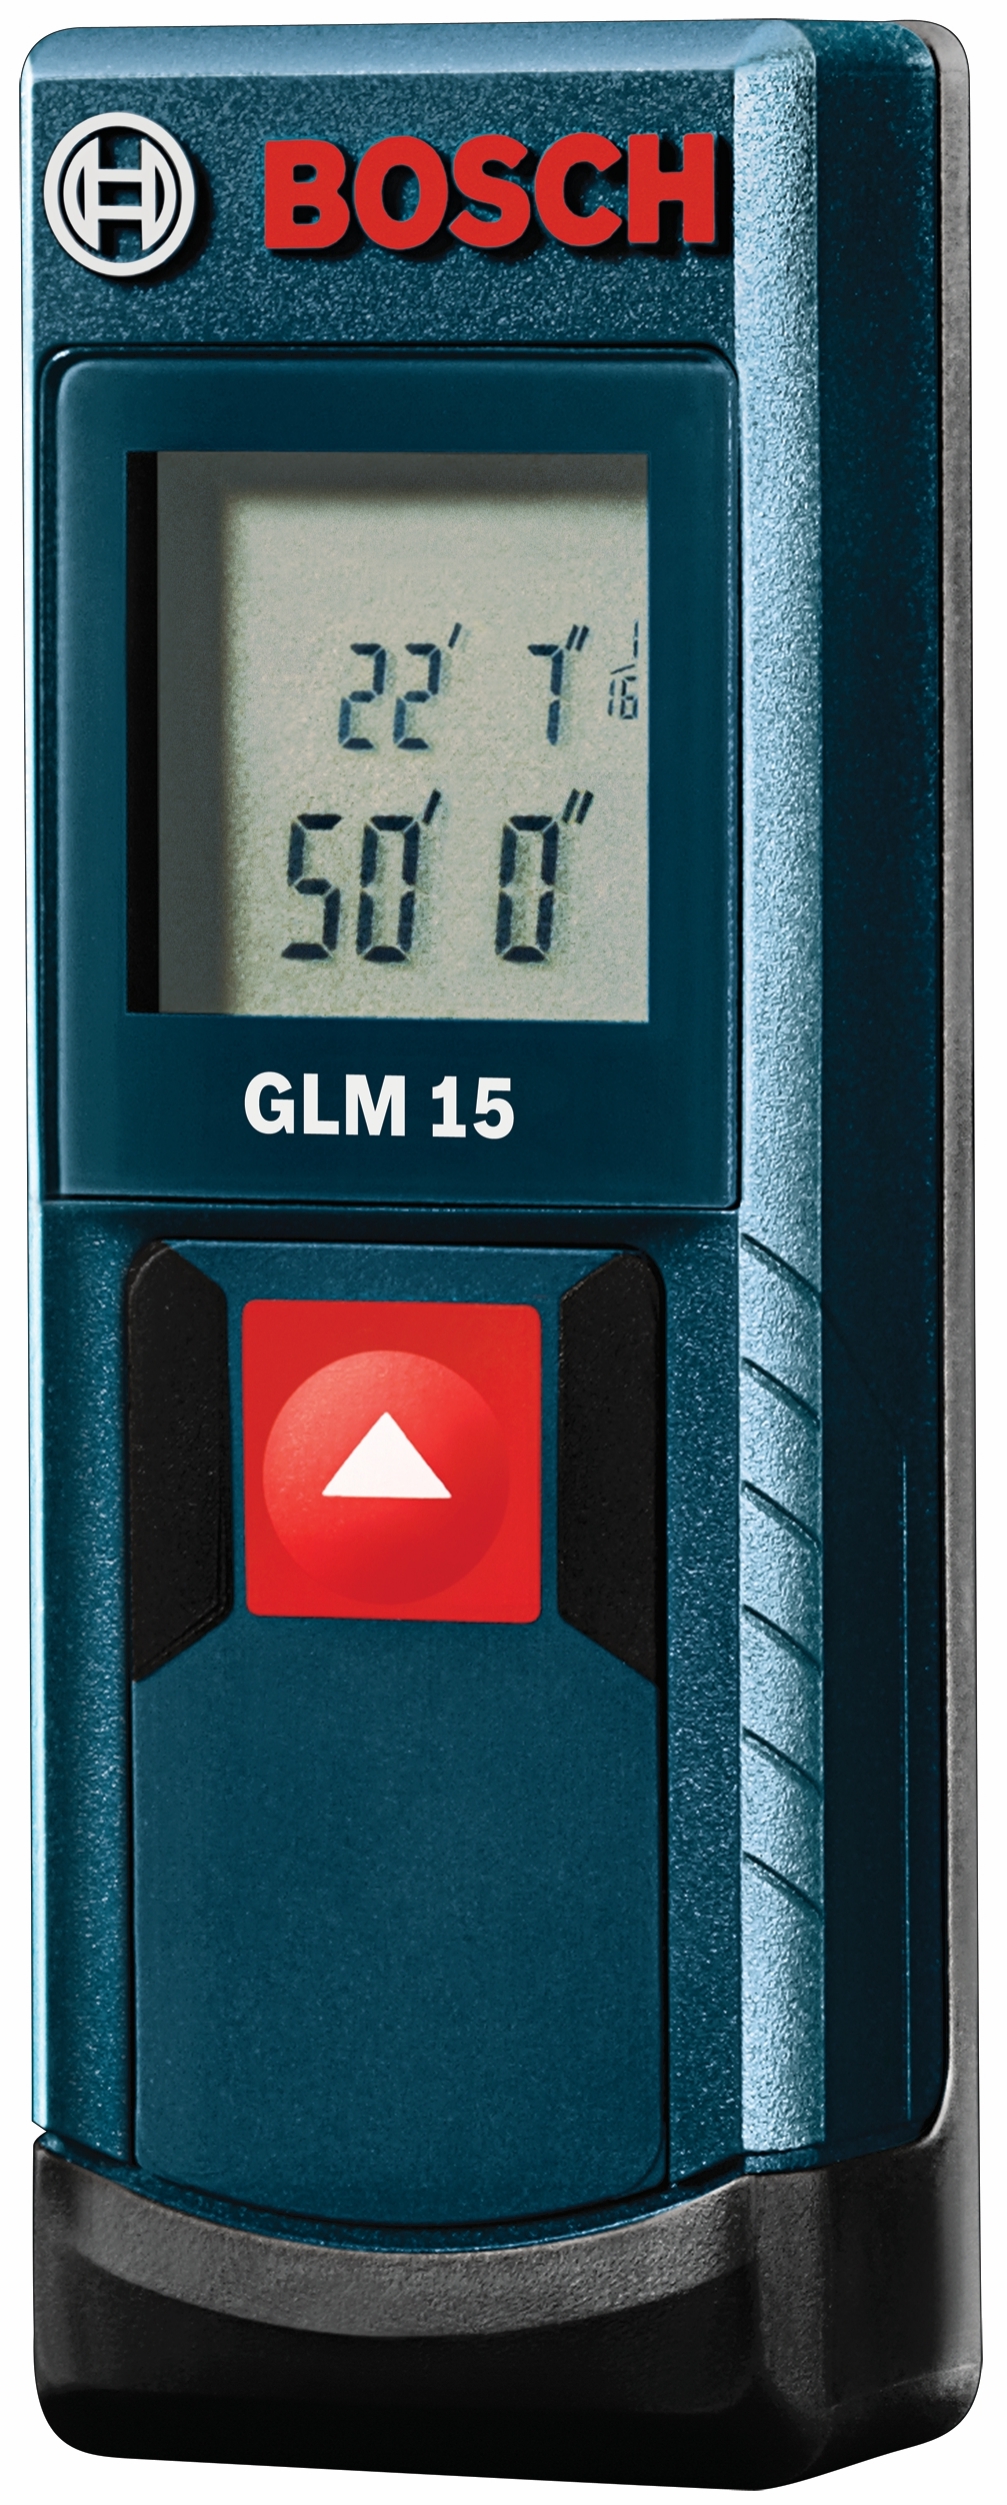 Bosch GLM 15 50 ft. Laser Measure, $50